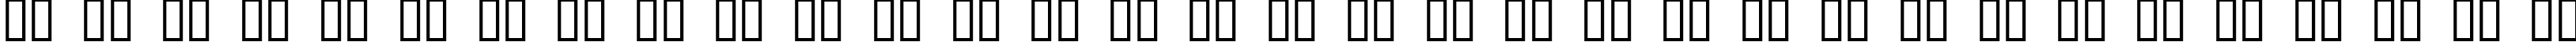 Пример написания русского алфавита шрифтом JI Kaleidoscope Bats 3